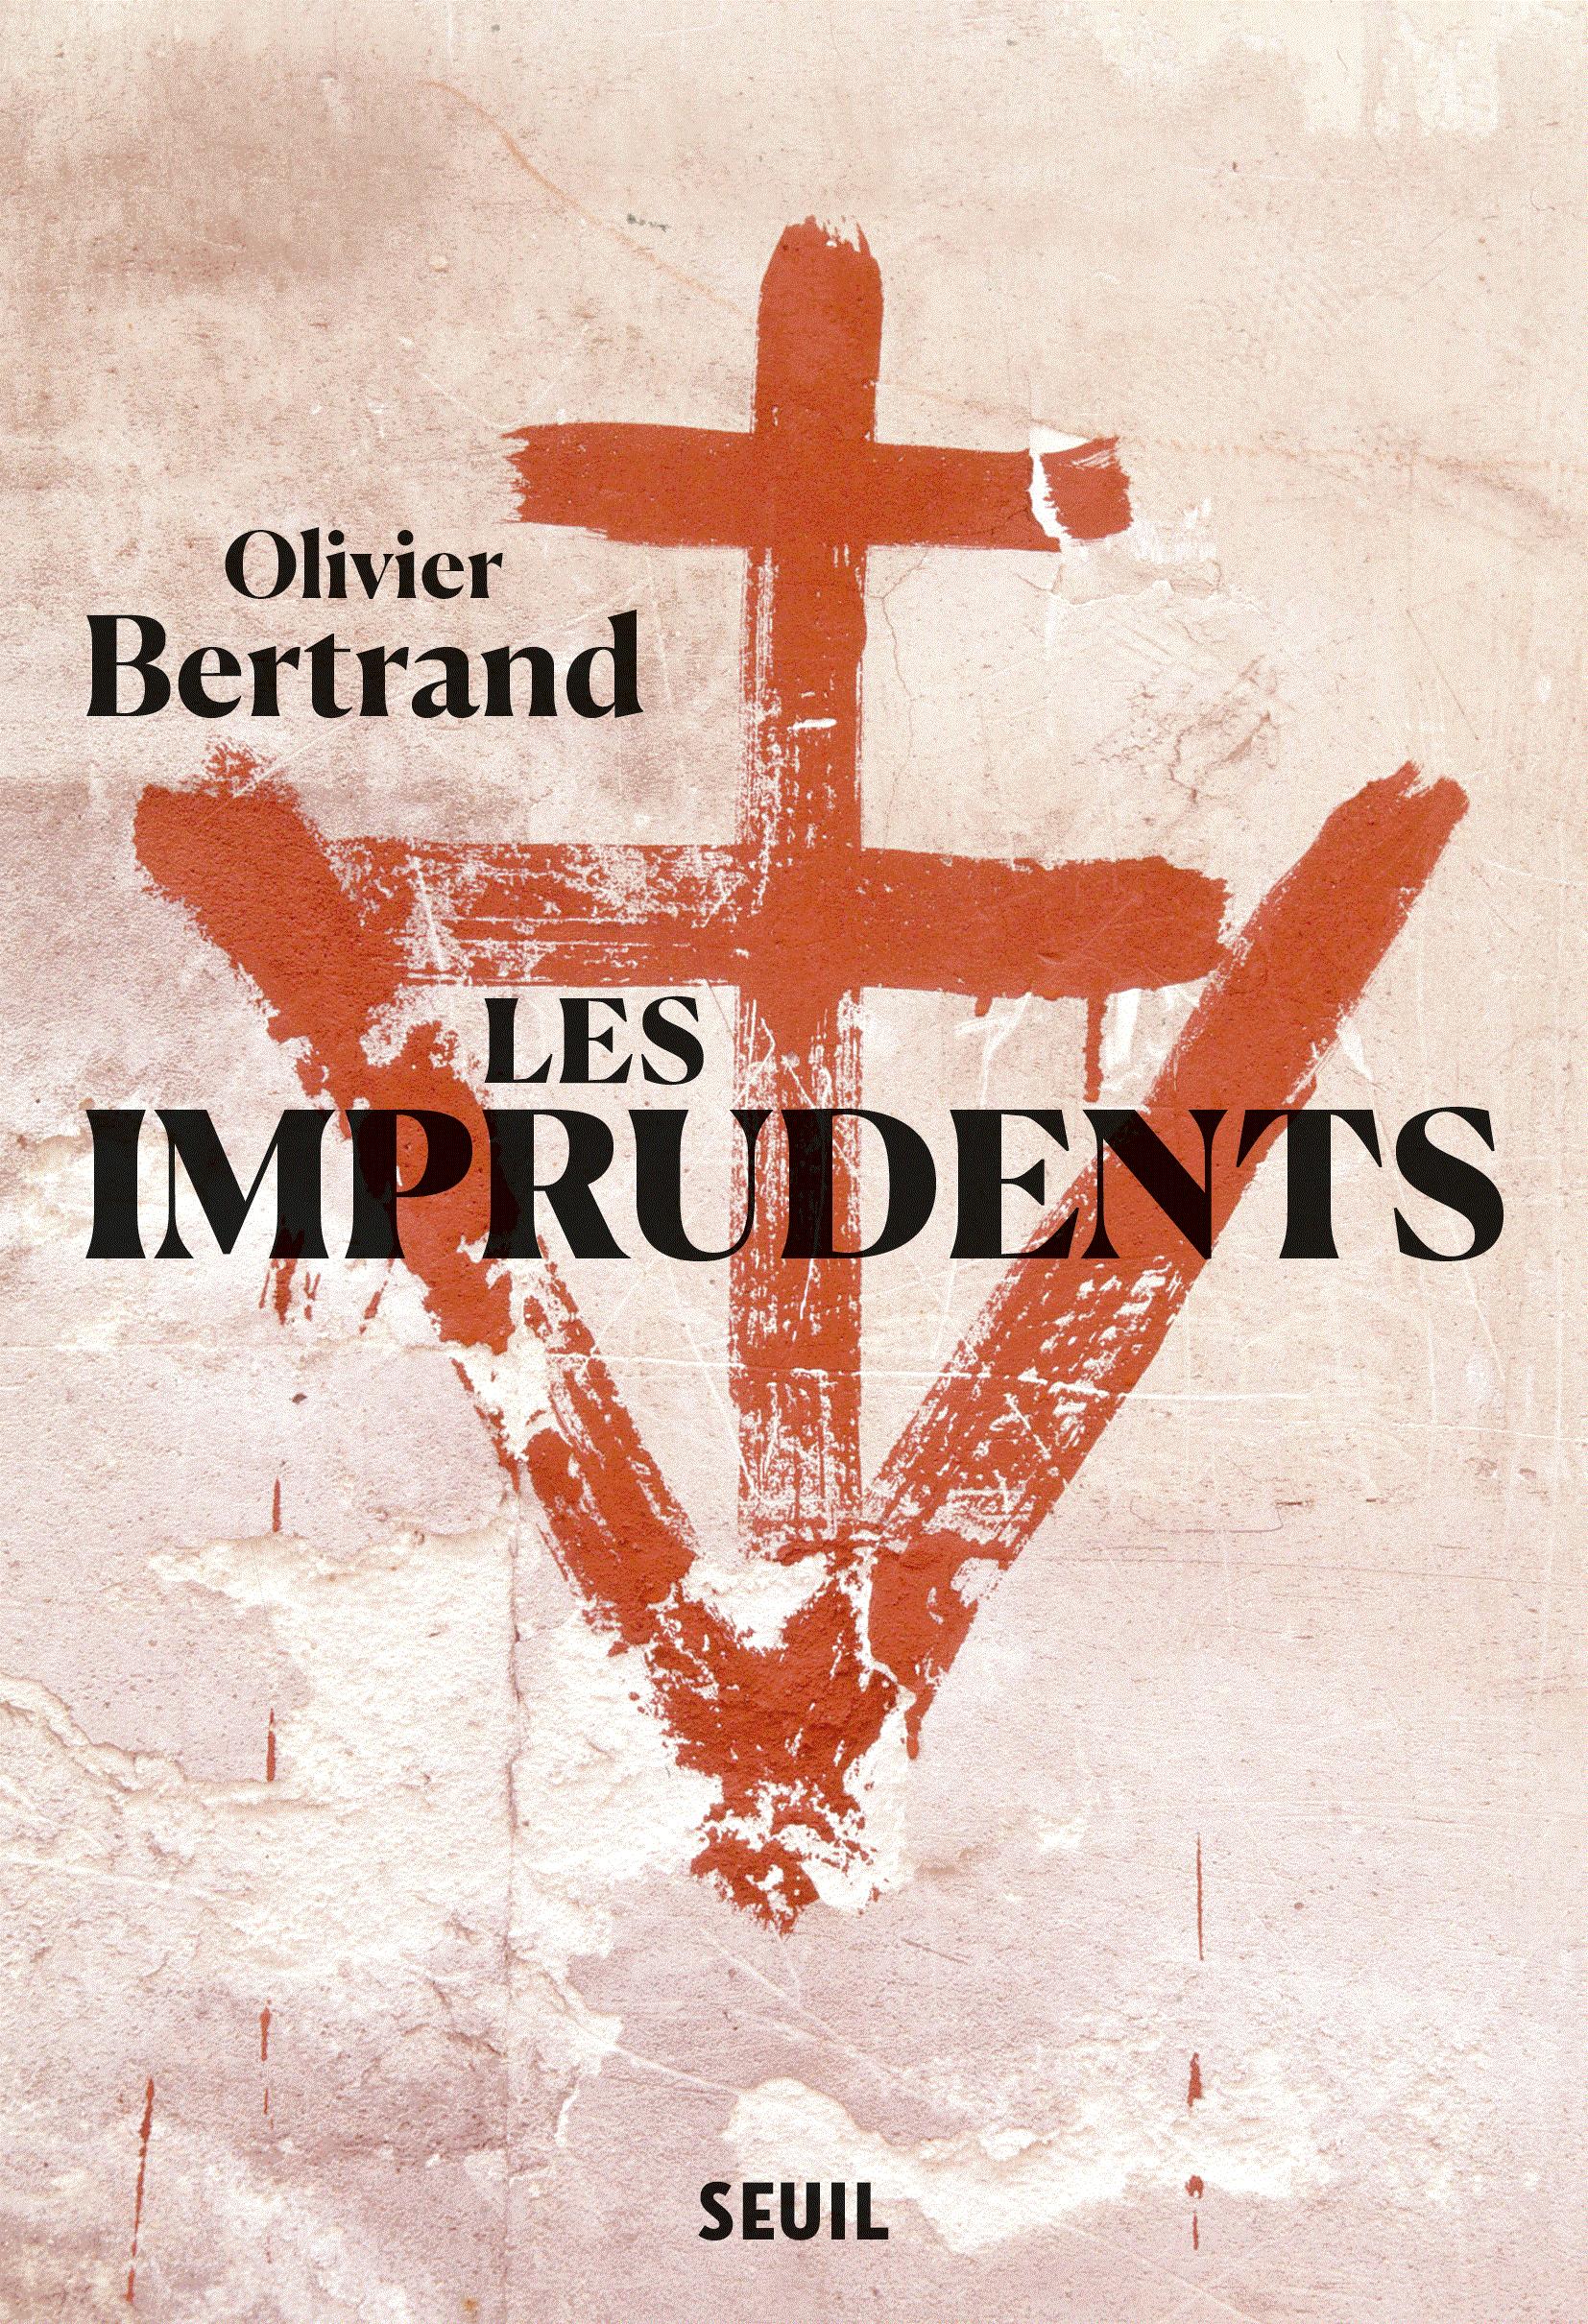 Couverture du livre Les Imprudents, Olivier Bertrand, 2019.